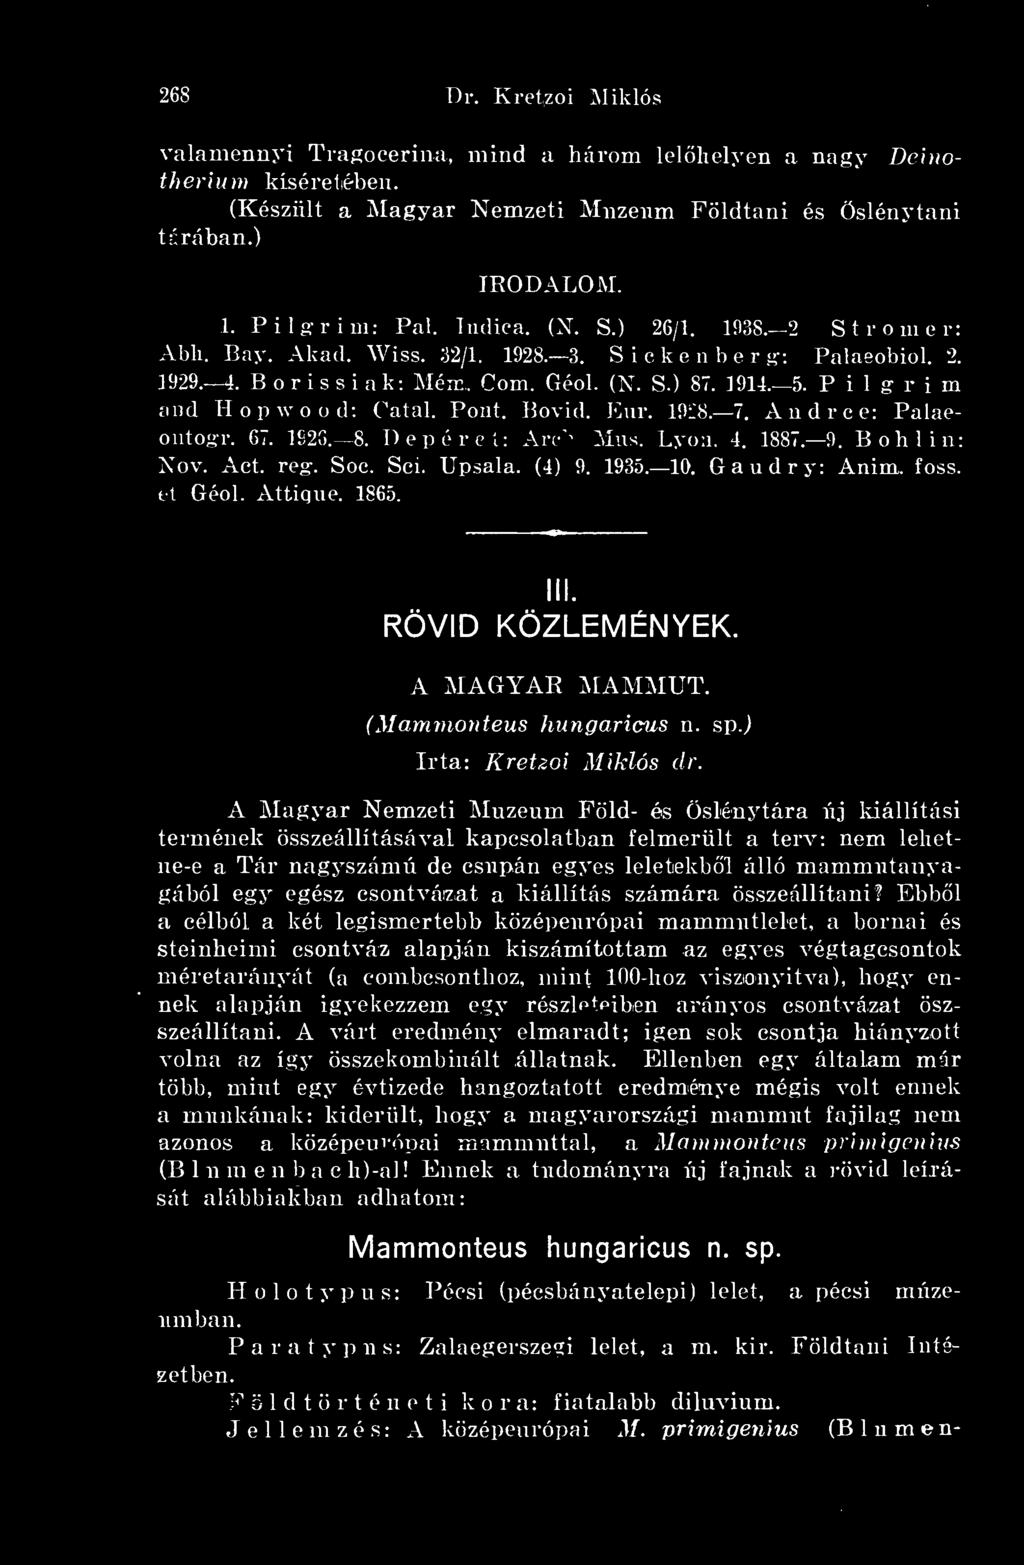 A Magyar Nemzeti Muzeurn Föld- és Öslénytára új kiállítási termének összeállításával kapcsolatban felmerült a terv: nem lehetne-e a Tár nagyszámú de csupán egyes leletekbl álló mammutanyagából egy